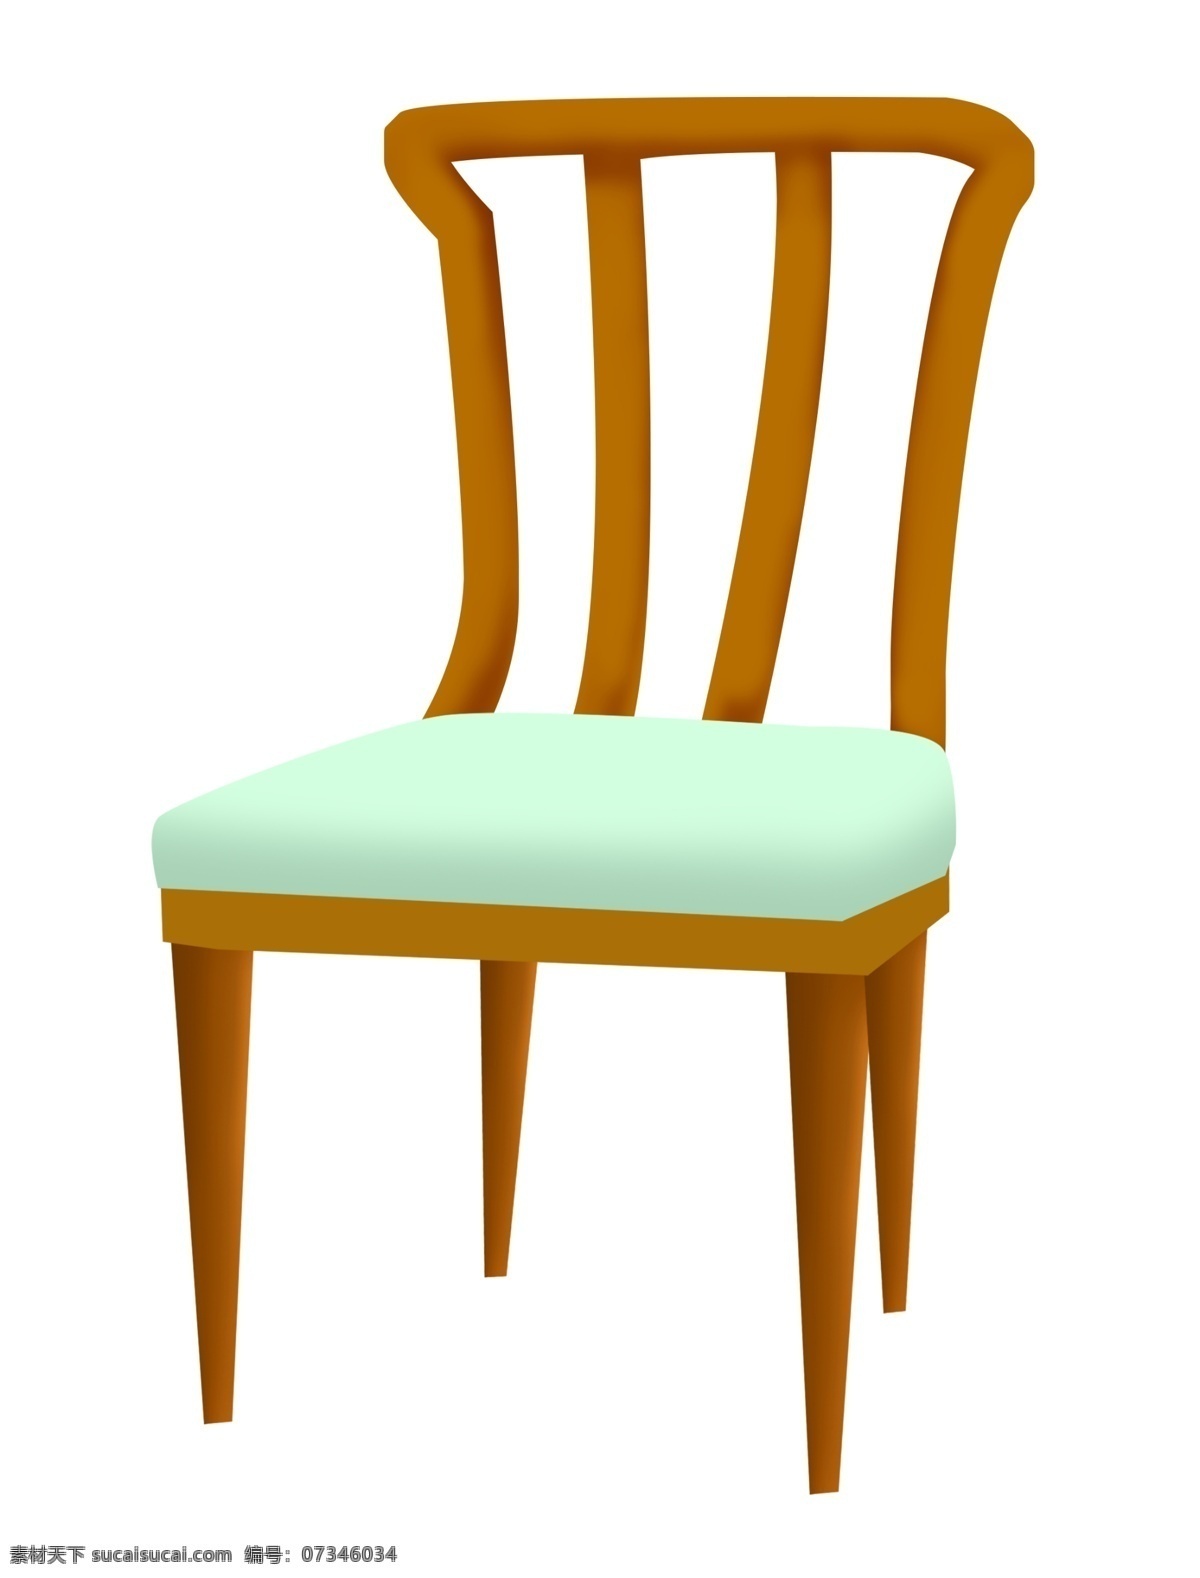 浅绿色 椅子 插画 浅绿色椅子 卡通插画 椅子插画 家具插画 椅子家具 精美椅子 浅绿色坐垫